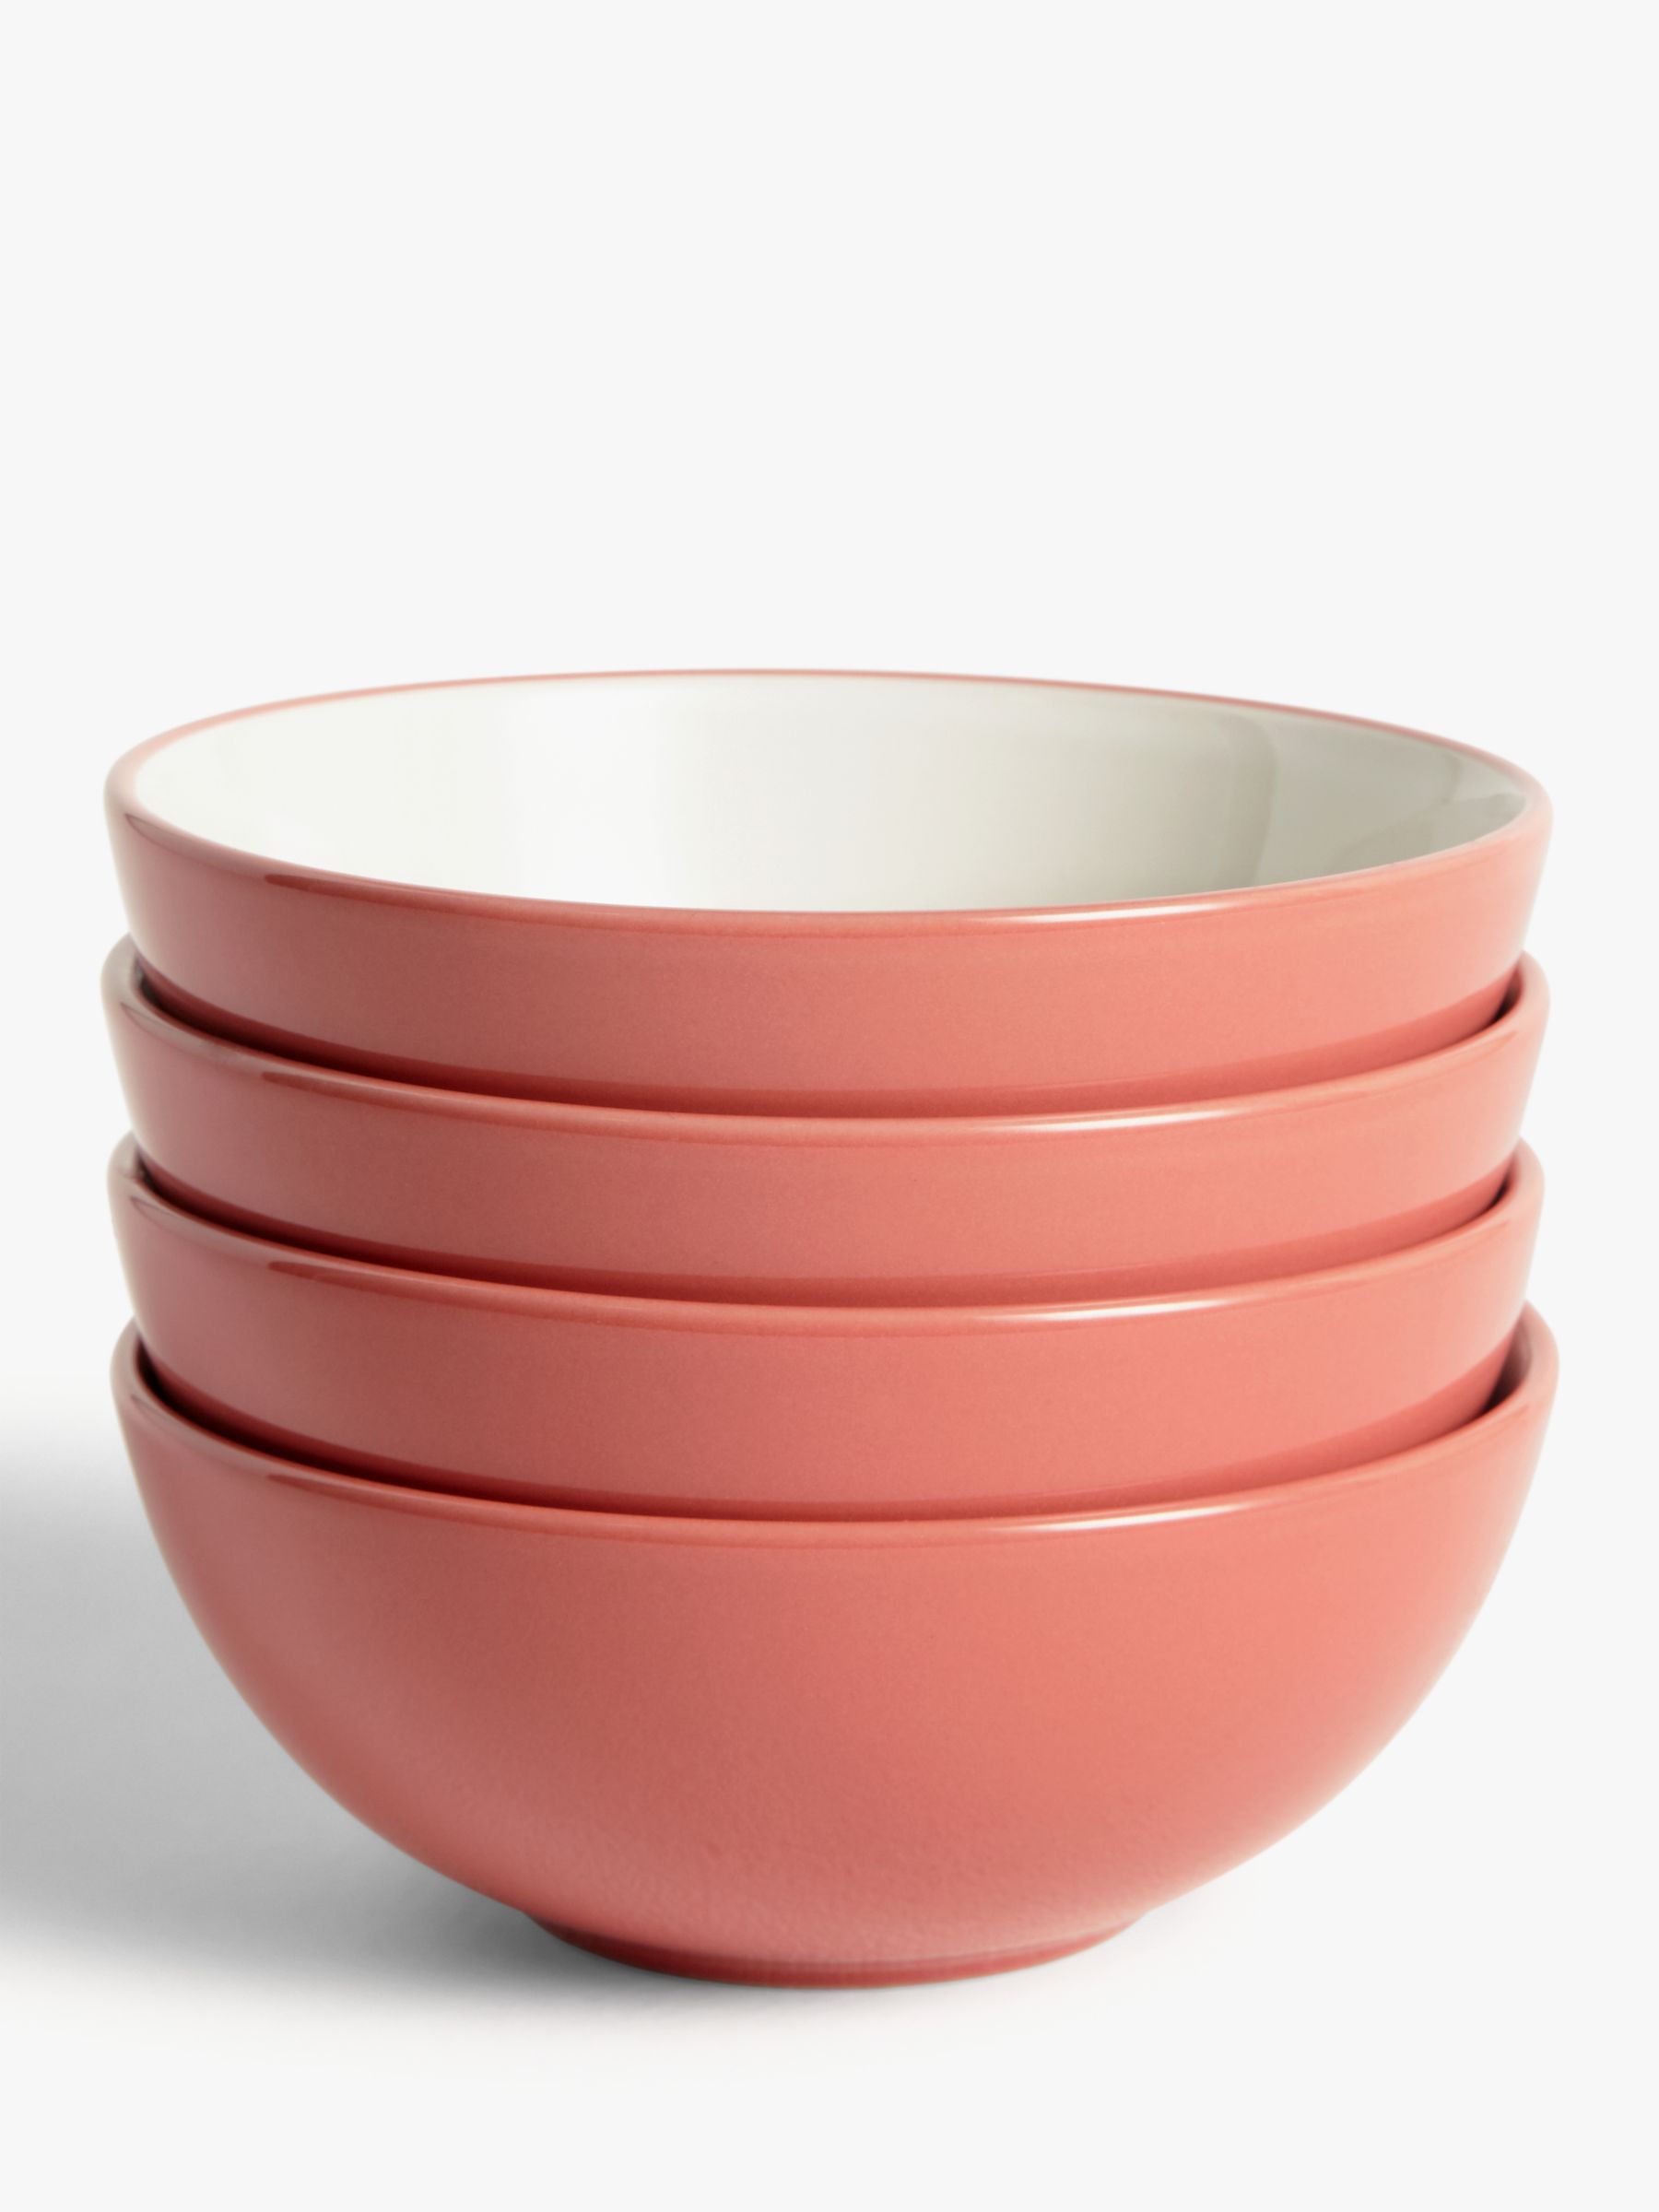 buy bowls